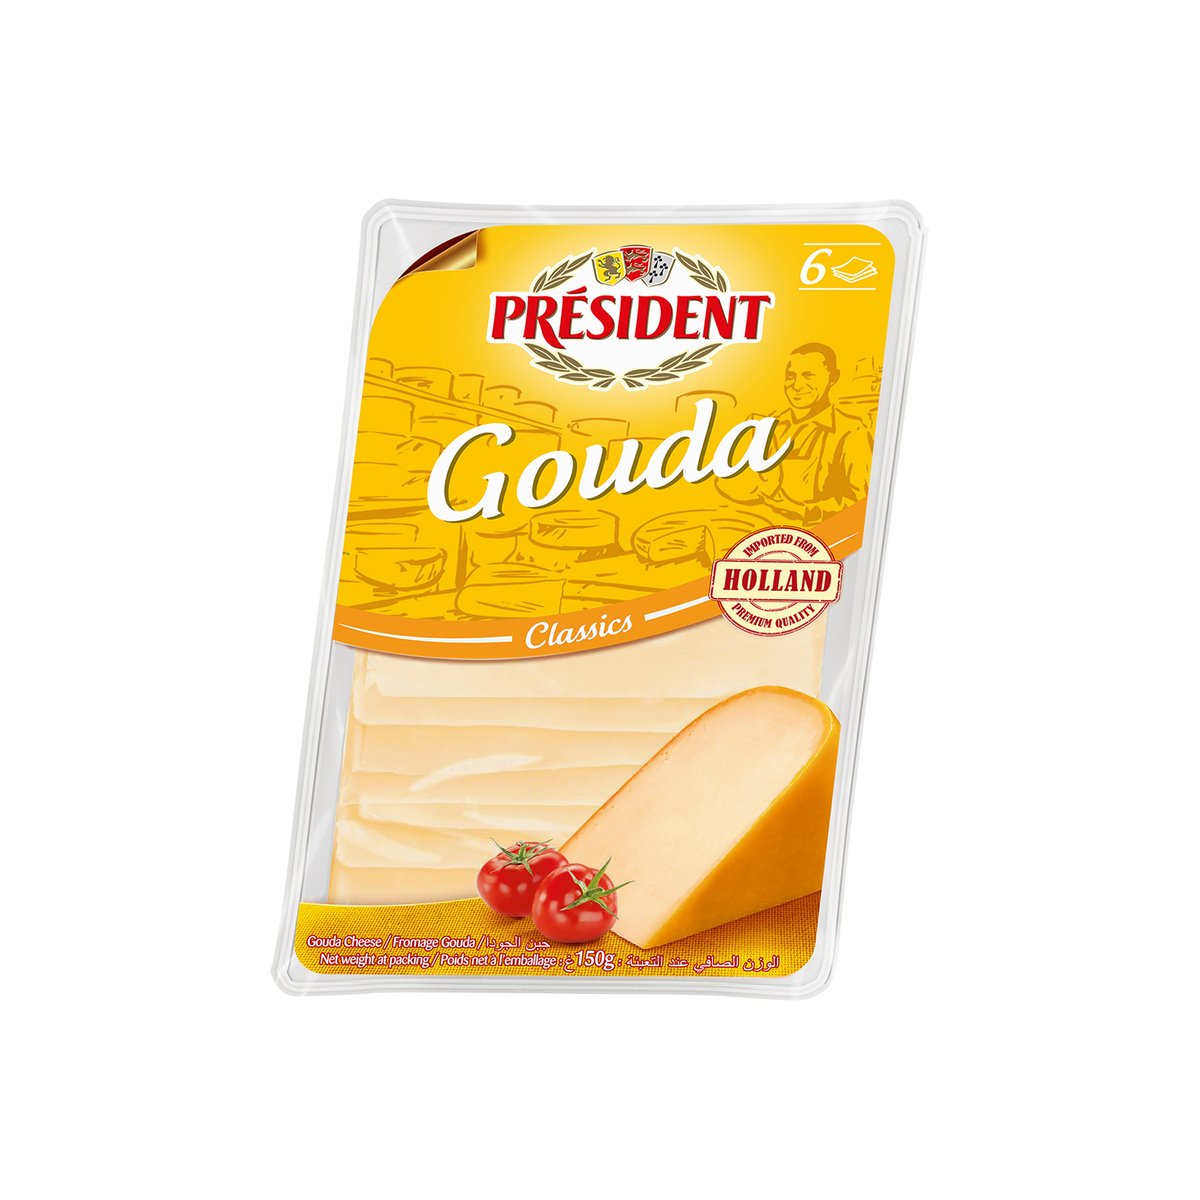 اشتري قم بشراء بريزيدن جودة جبنة شرائح 150 جم Online at Best Price من الموقع - من لولو هايبر ماركت Sliced Cheese في السعودية